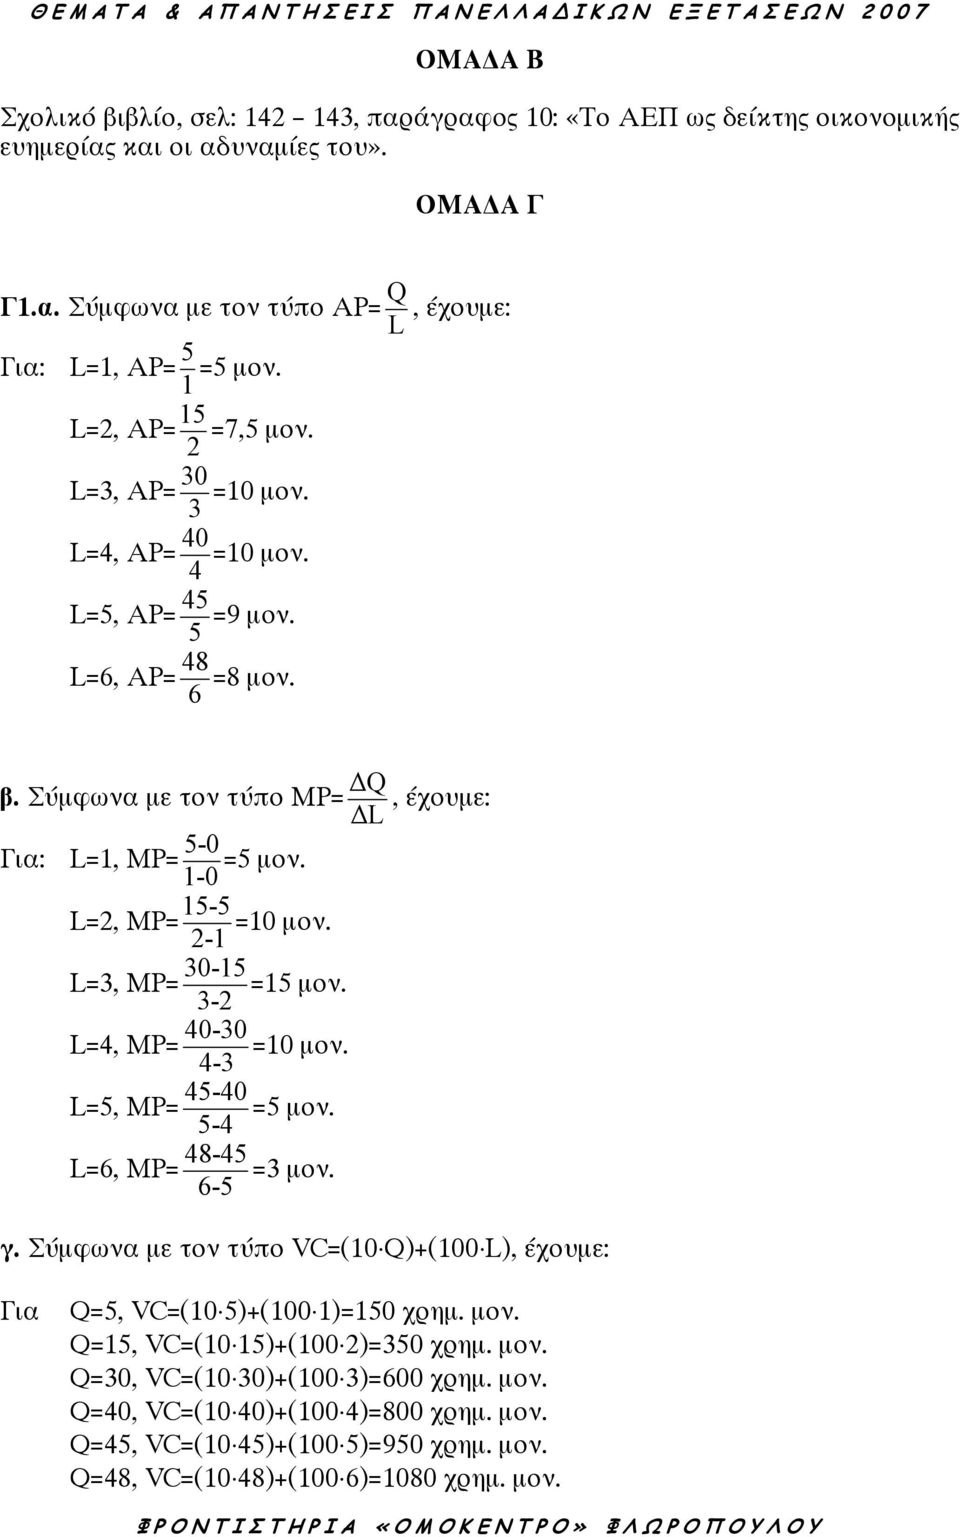 1-0 L=2, ΜP= 15-5 =10 µον. 2-1 L=3, ΜP= 30-15 =15 µον. 3-2 L=4, ΜP= 40-30 4-3 L=5, ΜP= 45-40 5-4 L=6, ΜP= 48-45 6-5 =10 µον. =5 µον. =3 µον. γ.